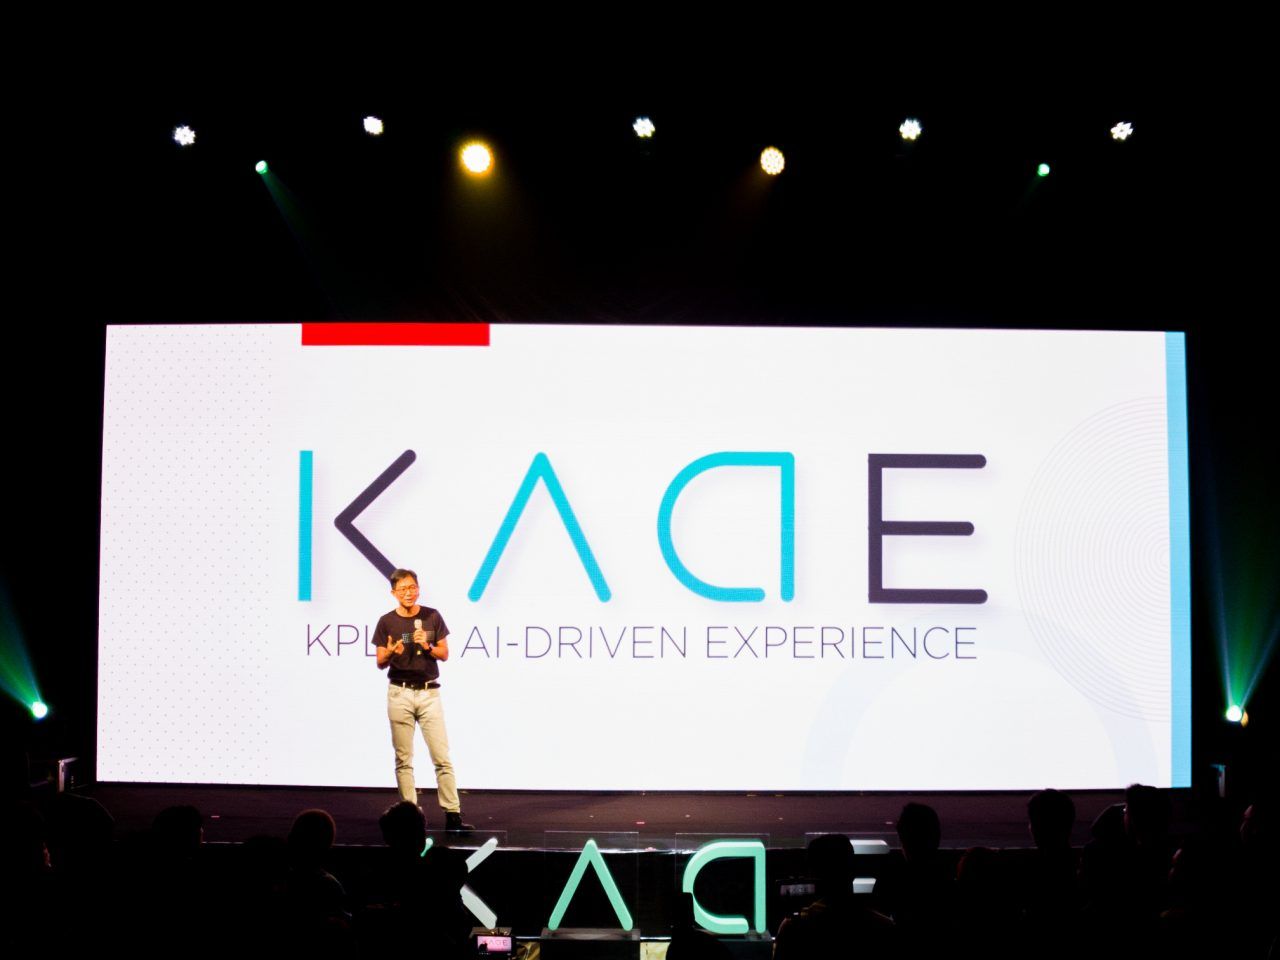 กสิกรเปิดนวัตกรรมใหม่ KADE ผสาน AI เข้ากับบริการของธนาคาร